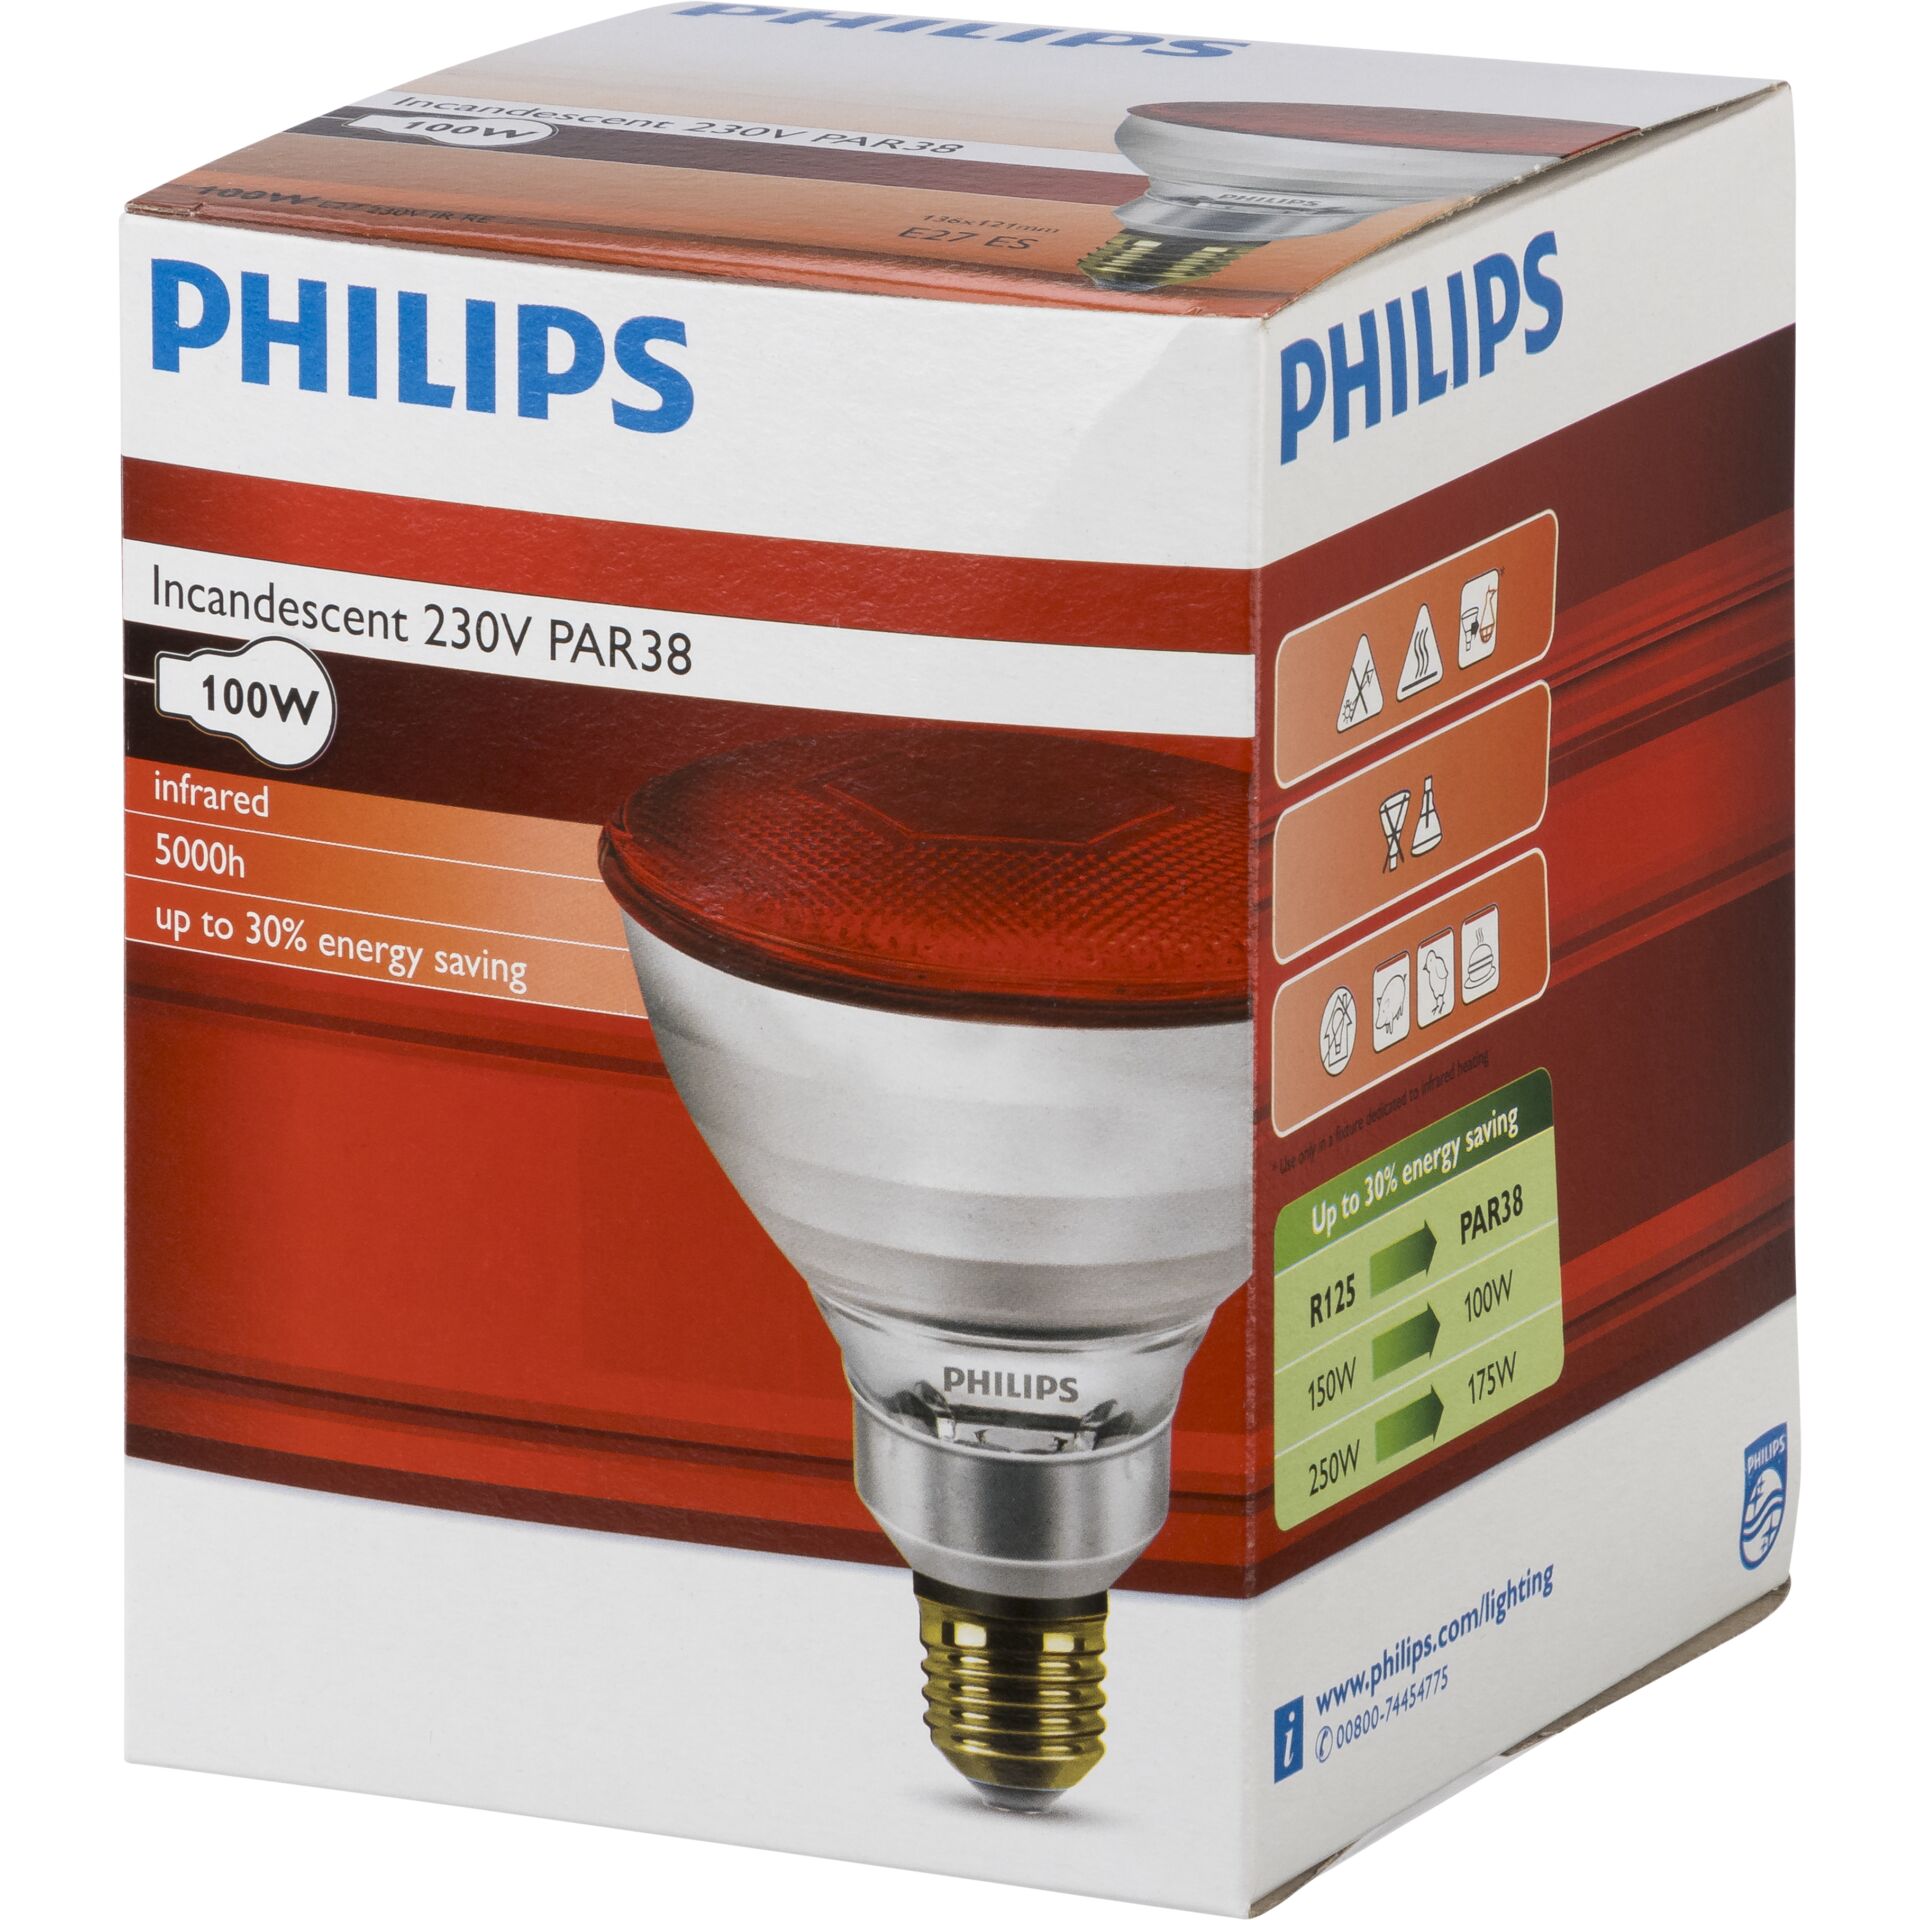 Philips lampada infrar. PAR38 IR 100W E27 230V rosso